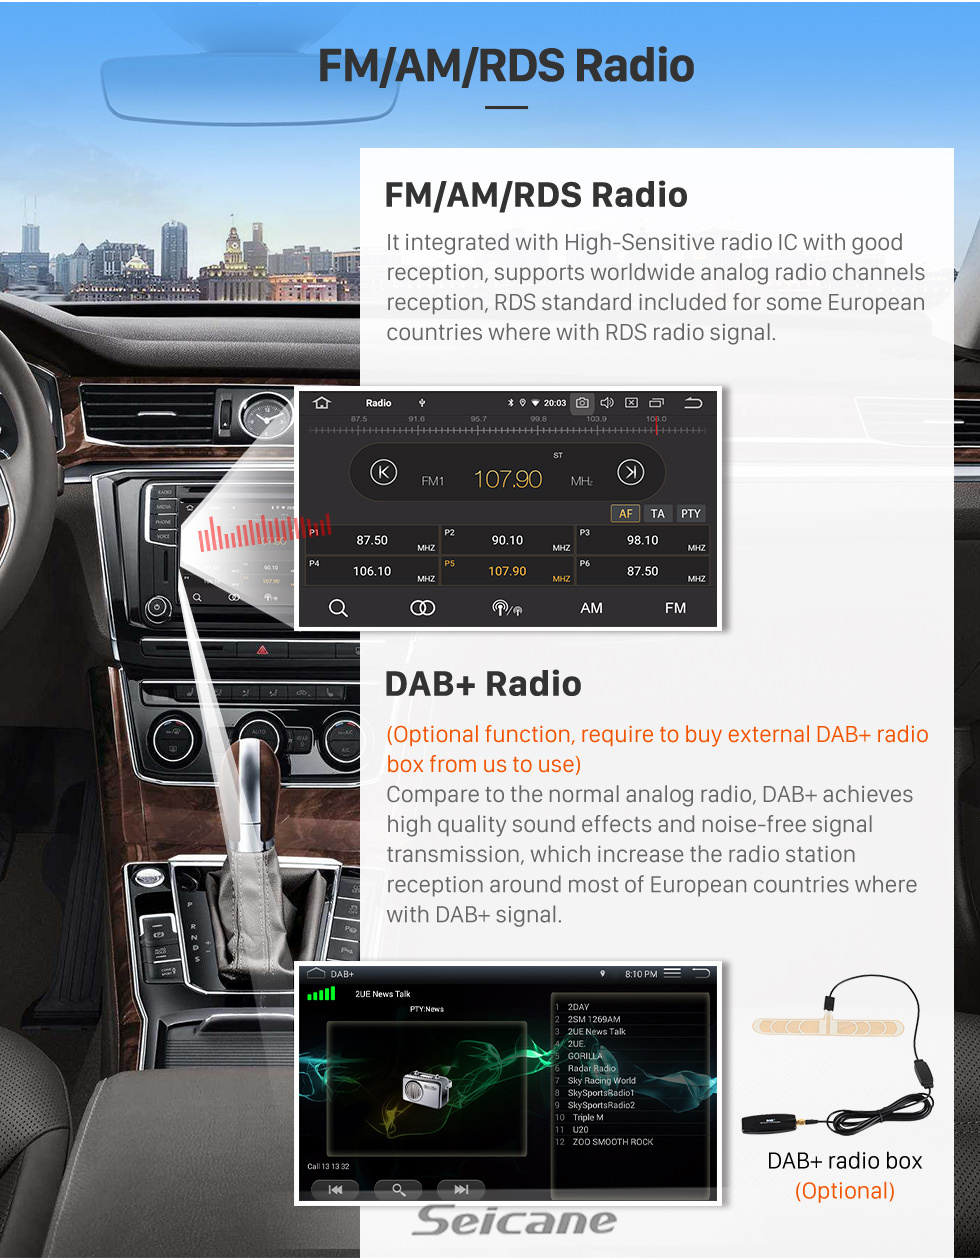 Seicane Melhor sistema de áudio para carro para 2017+ Suzuki Spacia com Carplay WIFI embutido Suporte Bluetooth Navegação GPS Picture in Picture DVR